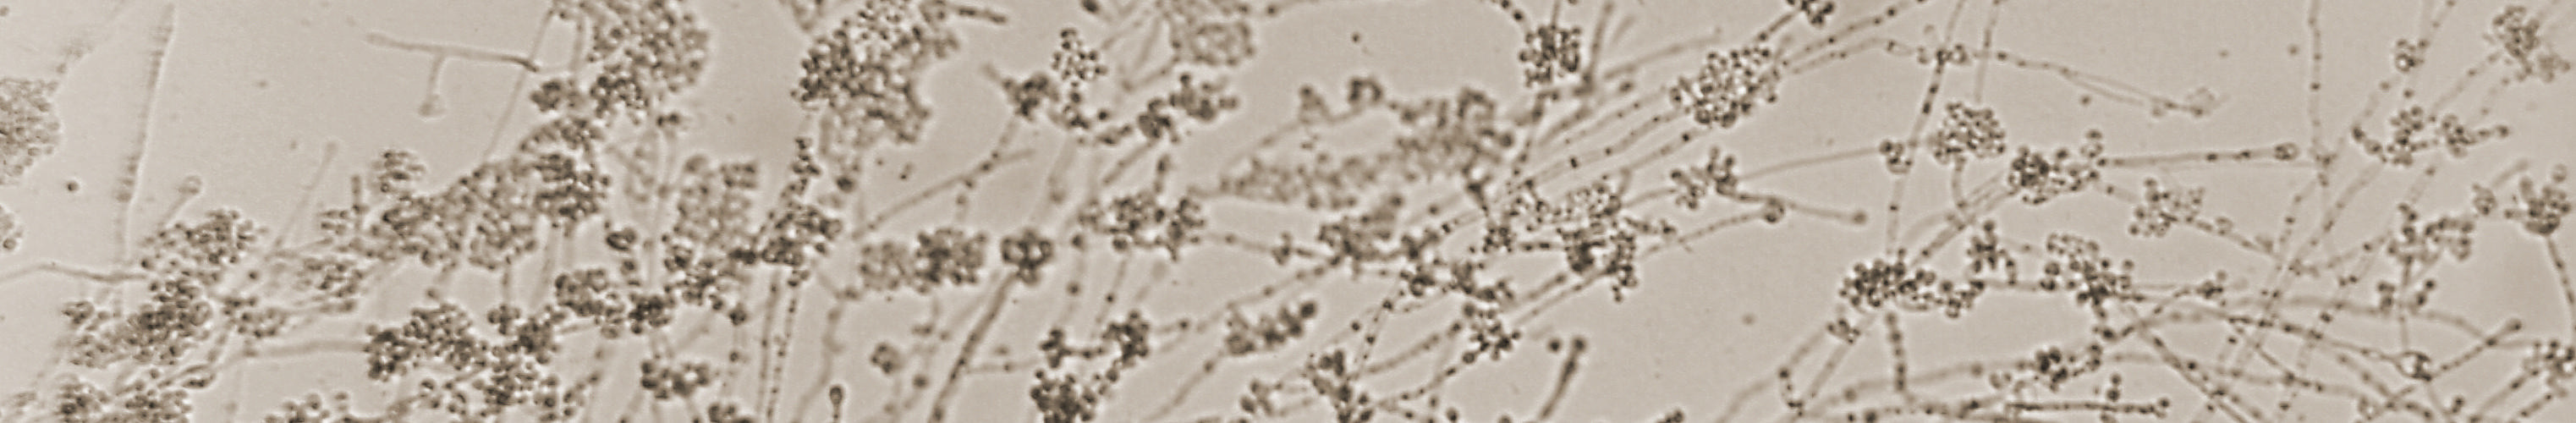 Mycelia of Candida albicans Hardon 1965